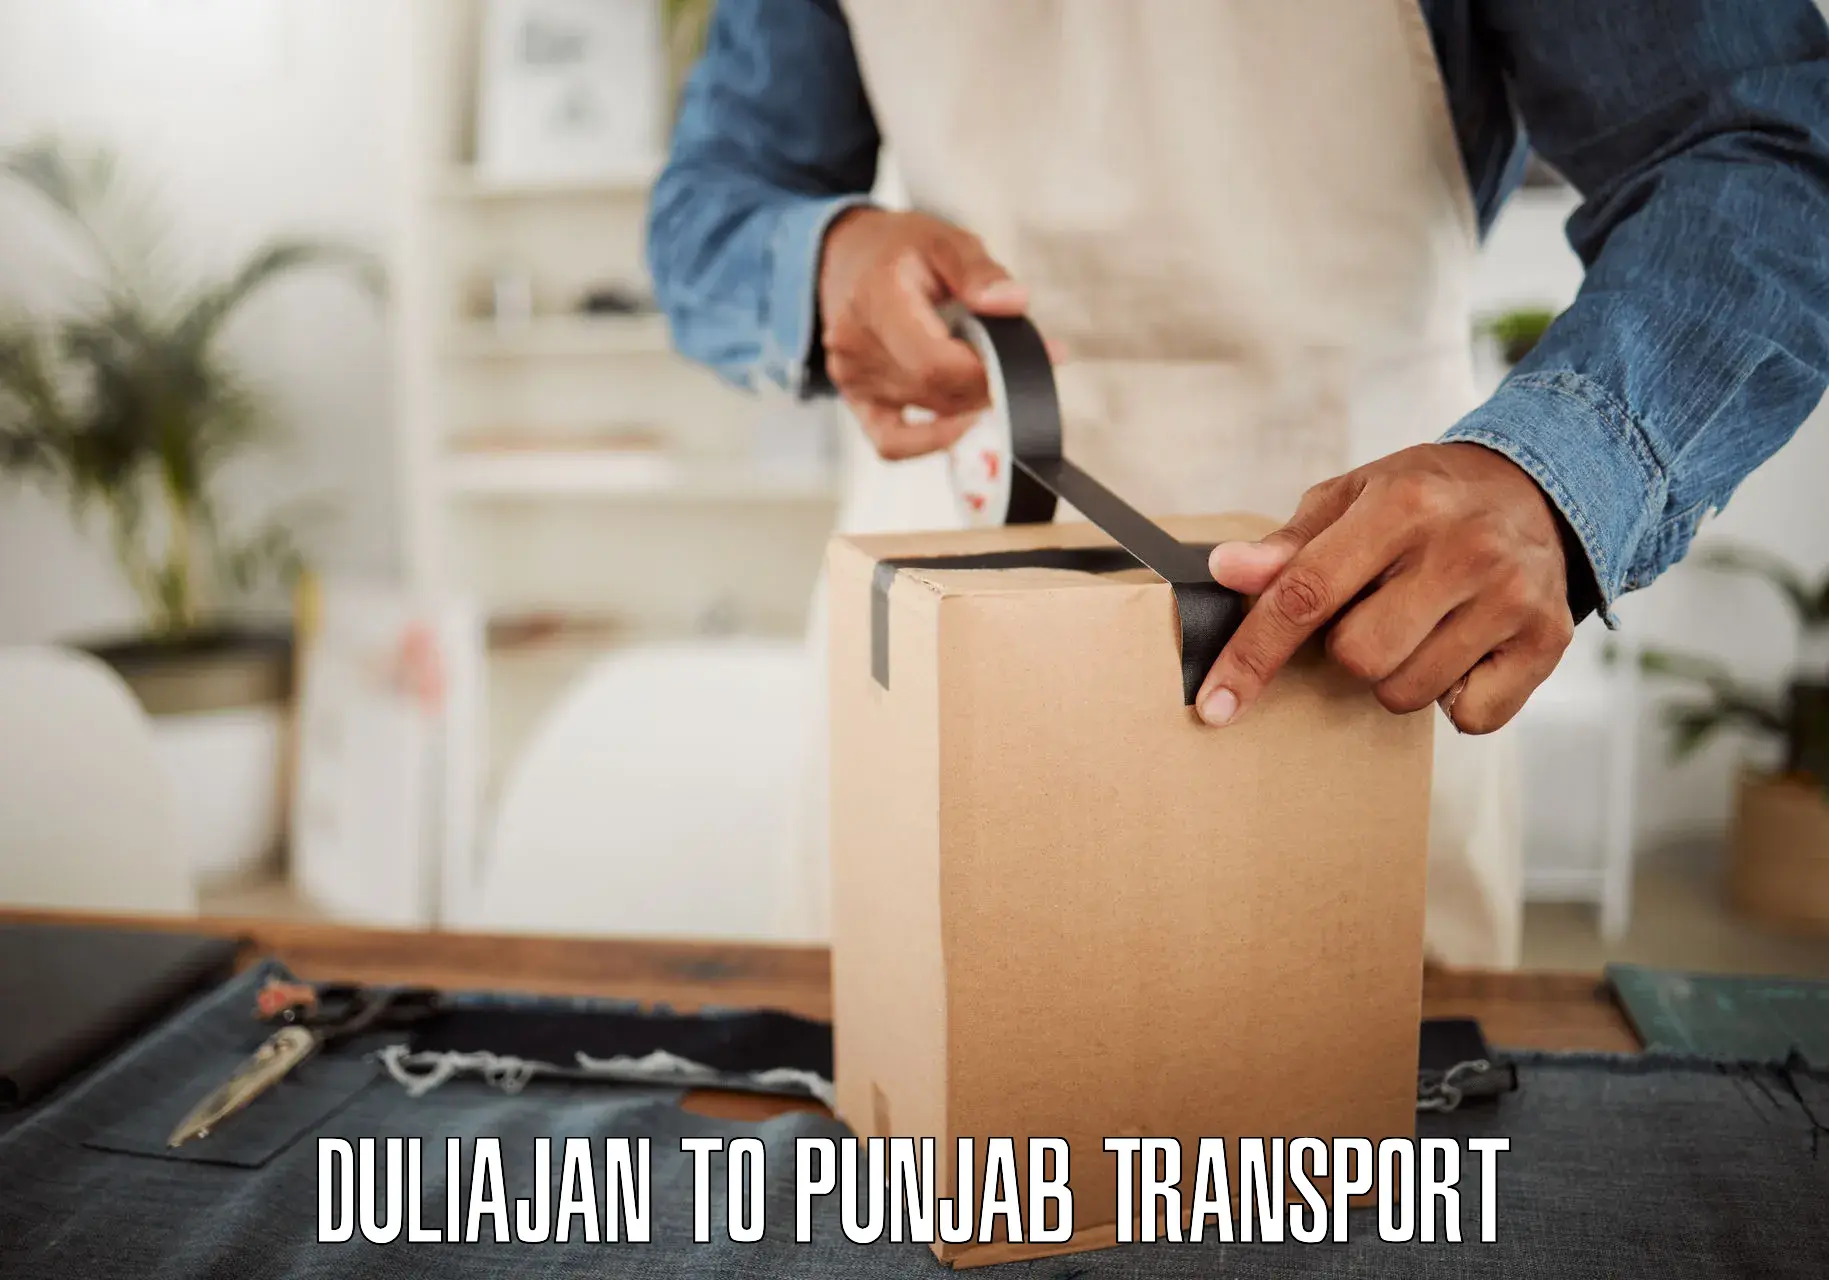 Online transport service Duliajan to Talwara